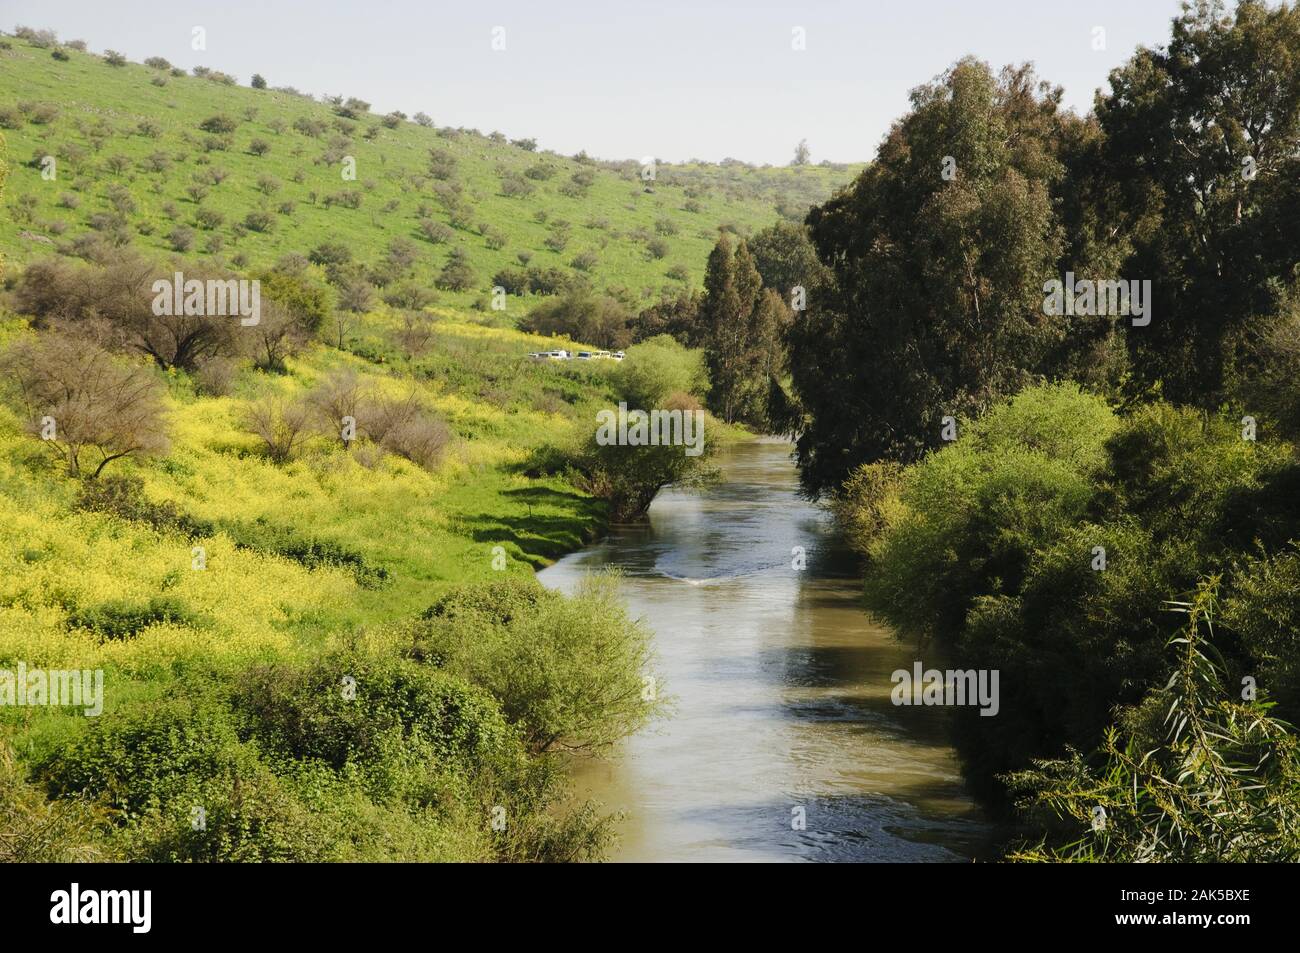 Jordan durchquert Laenge nach das ganze Land, | usage worldwide Stock Photo - Alamy